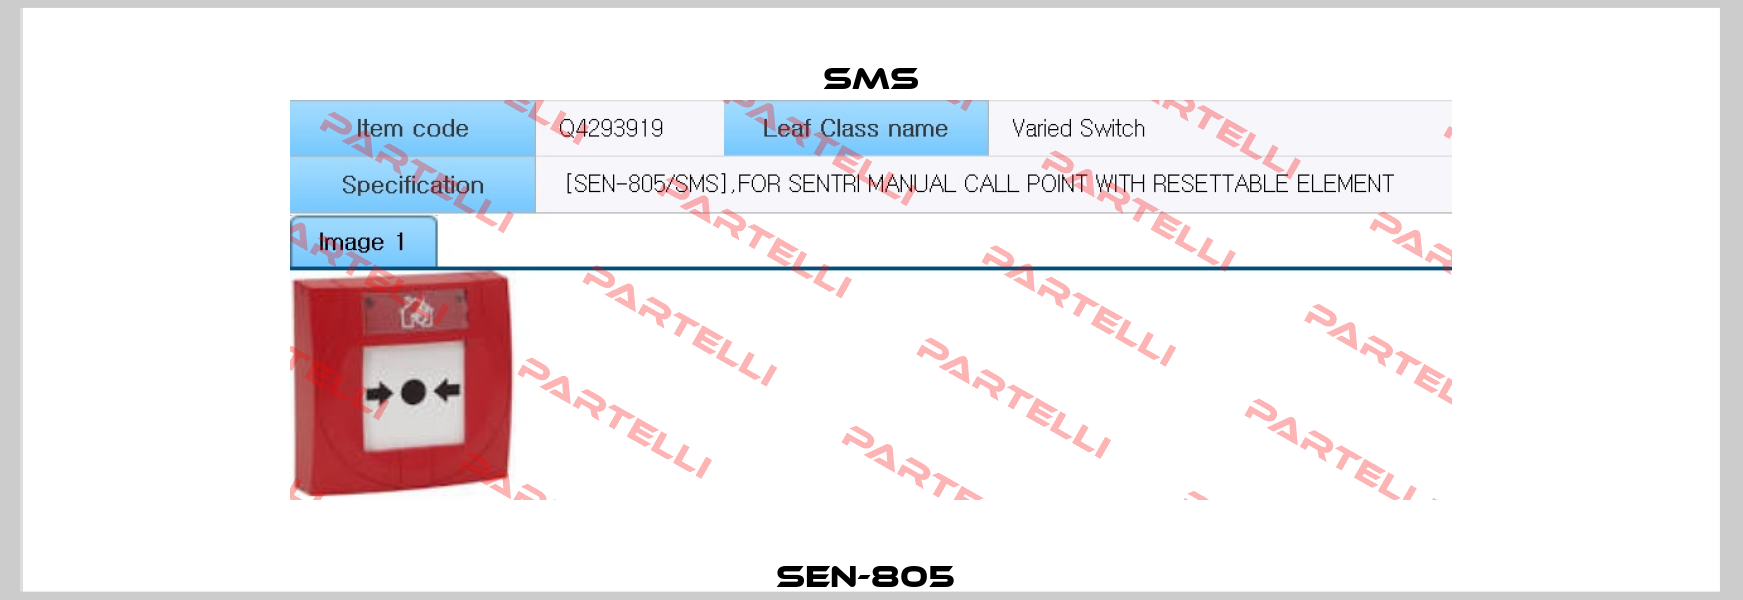 SEN-805  SMS